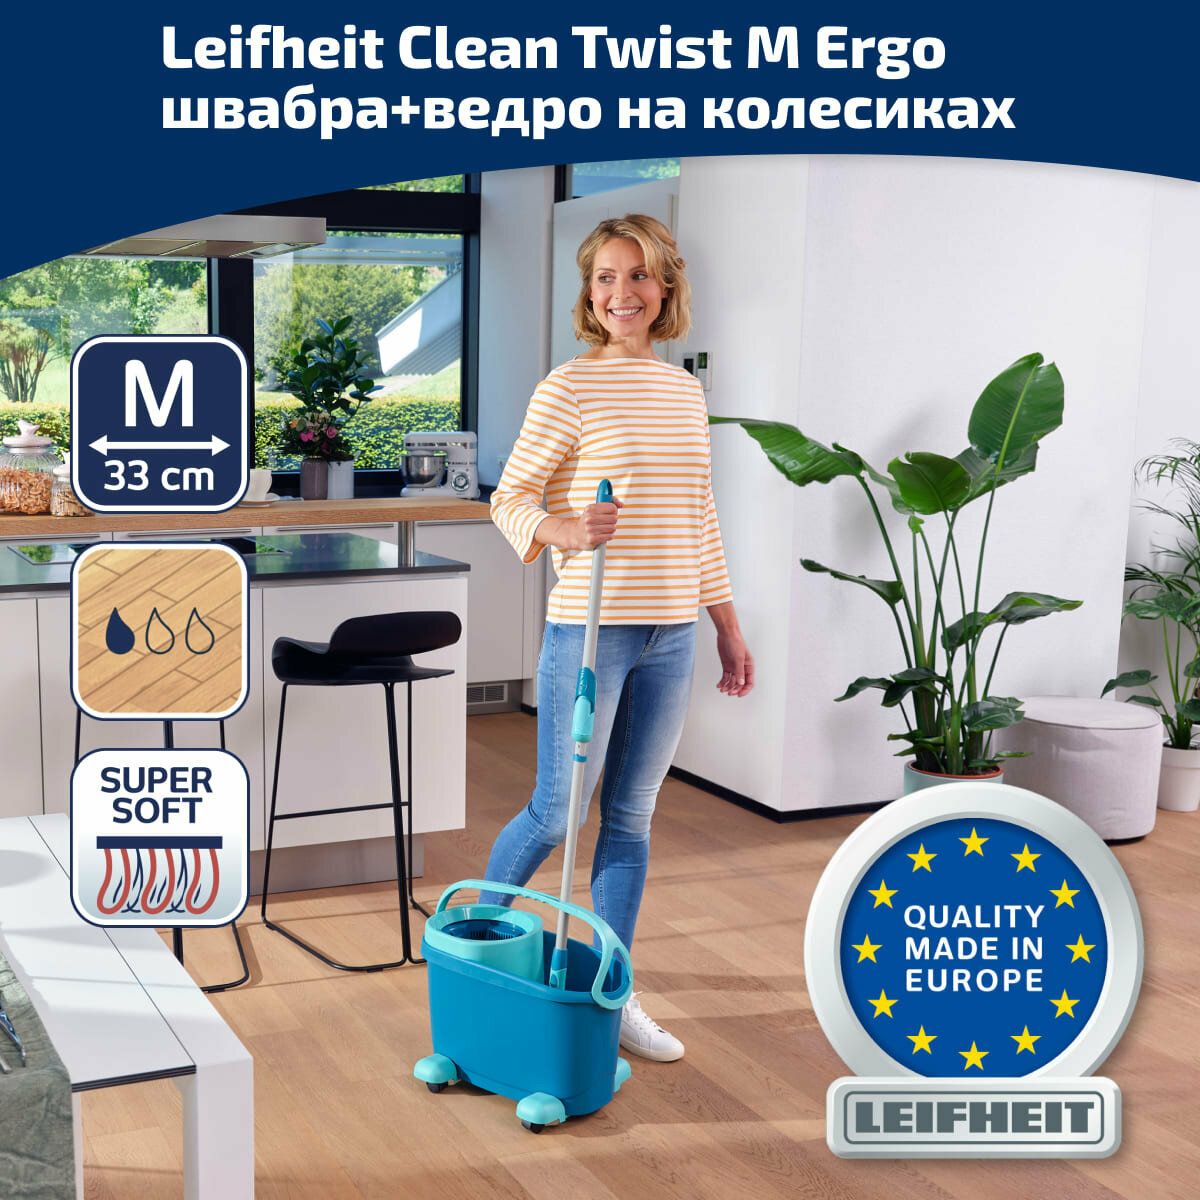 Комплект для влажной уборки Leifheit Clean Twist M Ergo швабра и ведро на колесиках